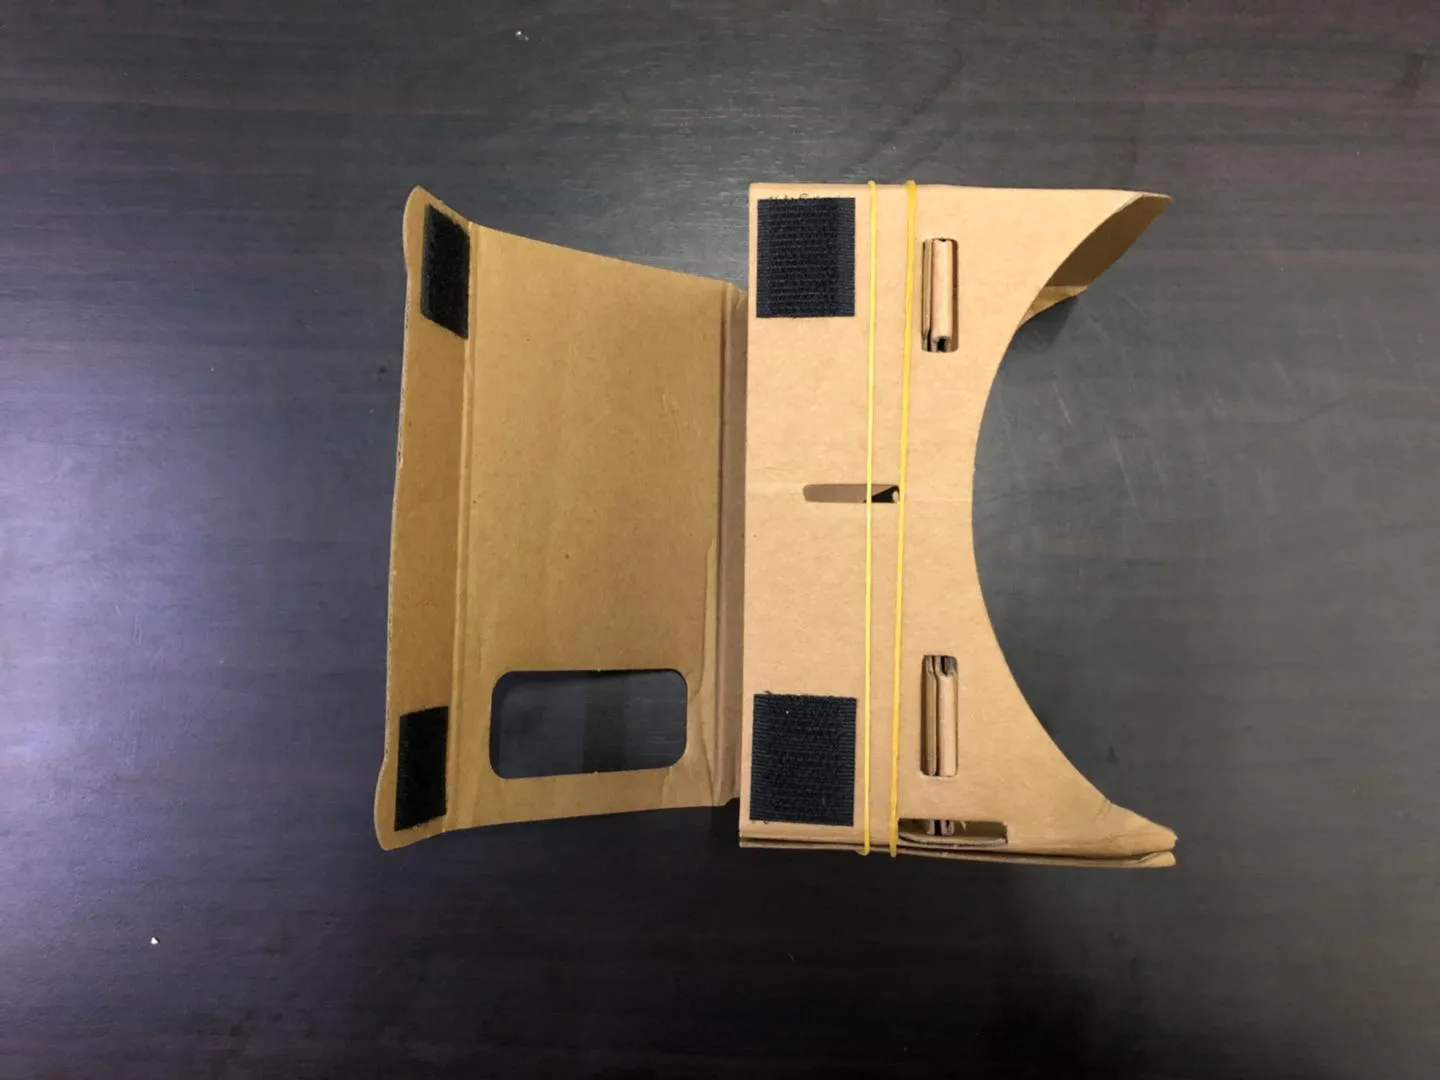 Бесплатные 3D-модели 3D Glasses VR Glasses DIY Google Cardboard Мобильный телефон Виртуальная реальность Неофициальная картонная VR Toolkit 3D Glasses CCA1785 B-XY